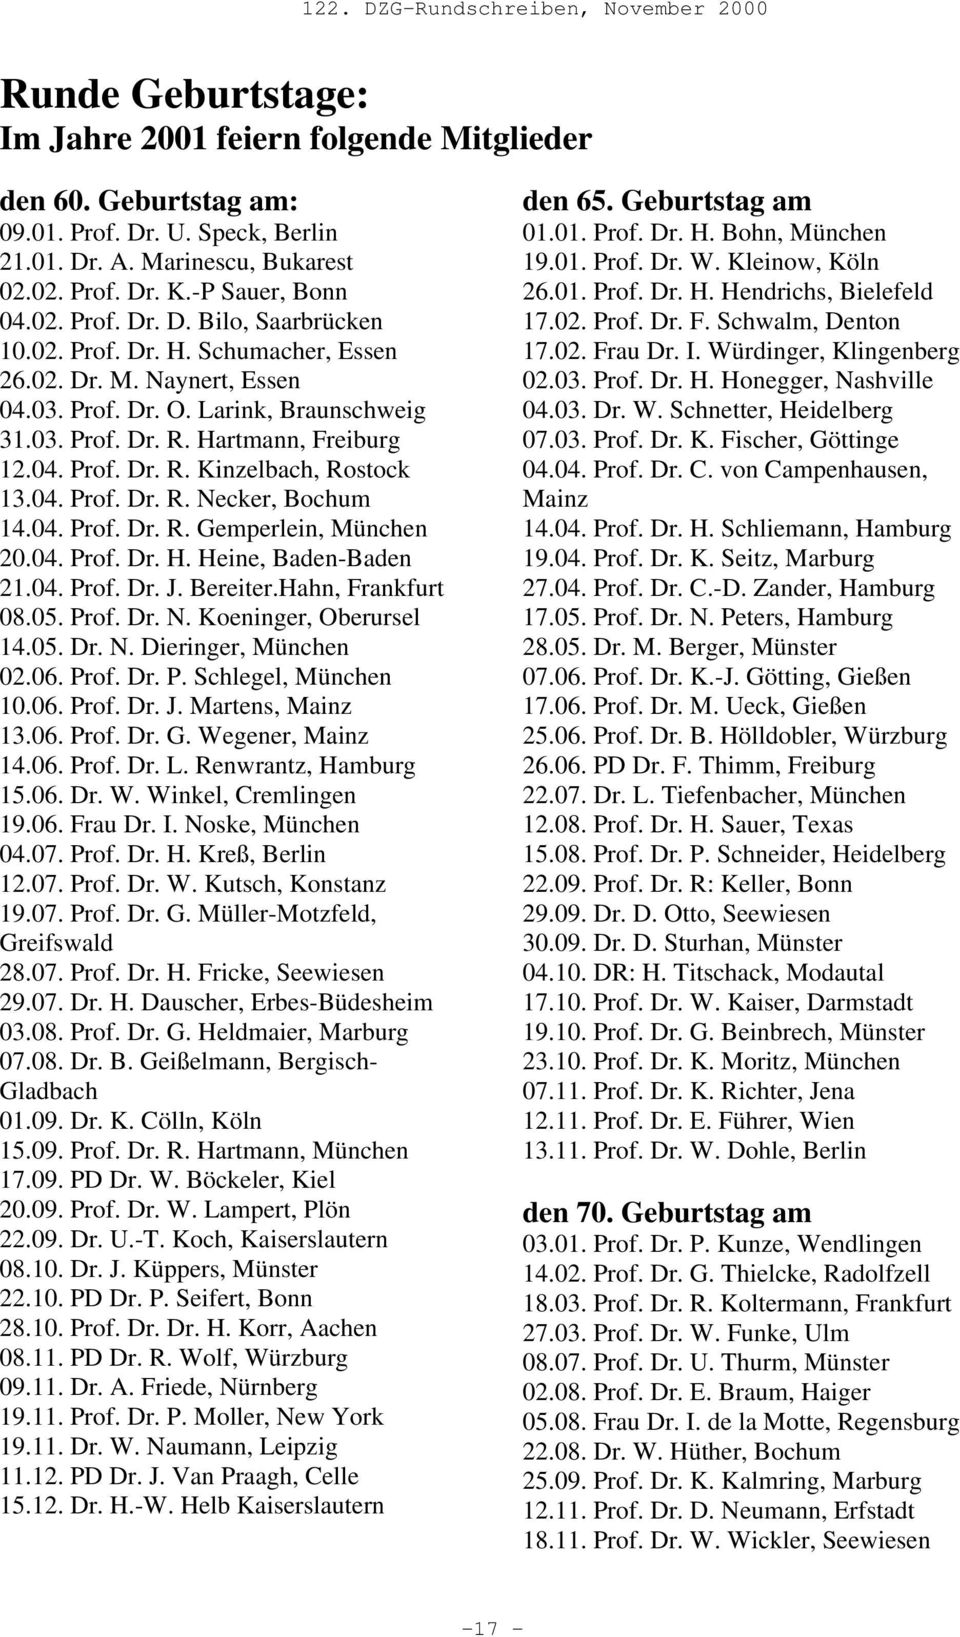 04. Prof. Dr. R. Gemperlein, München 20.04. Prof. Dr. H. Heine, Baden-Baden 21.04. Prof. Dr. J. Bereiter.Hahn, Frankfurt 08.05. Prof. Dr. N. Koeninger, Oberursel 14.05. Dr. N. Dieringer, München 02.